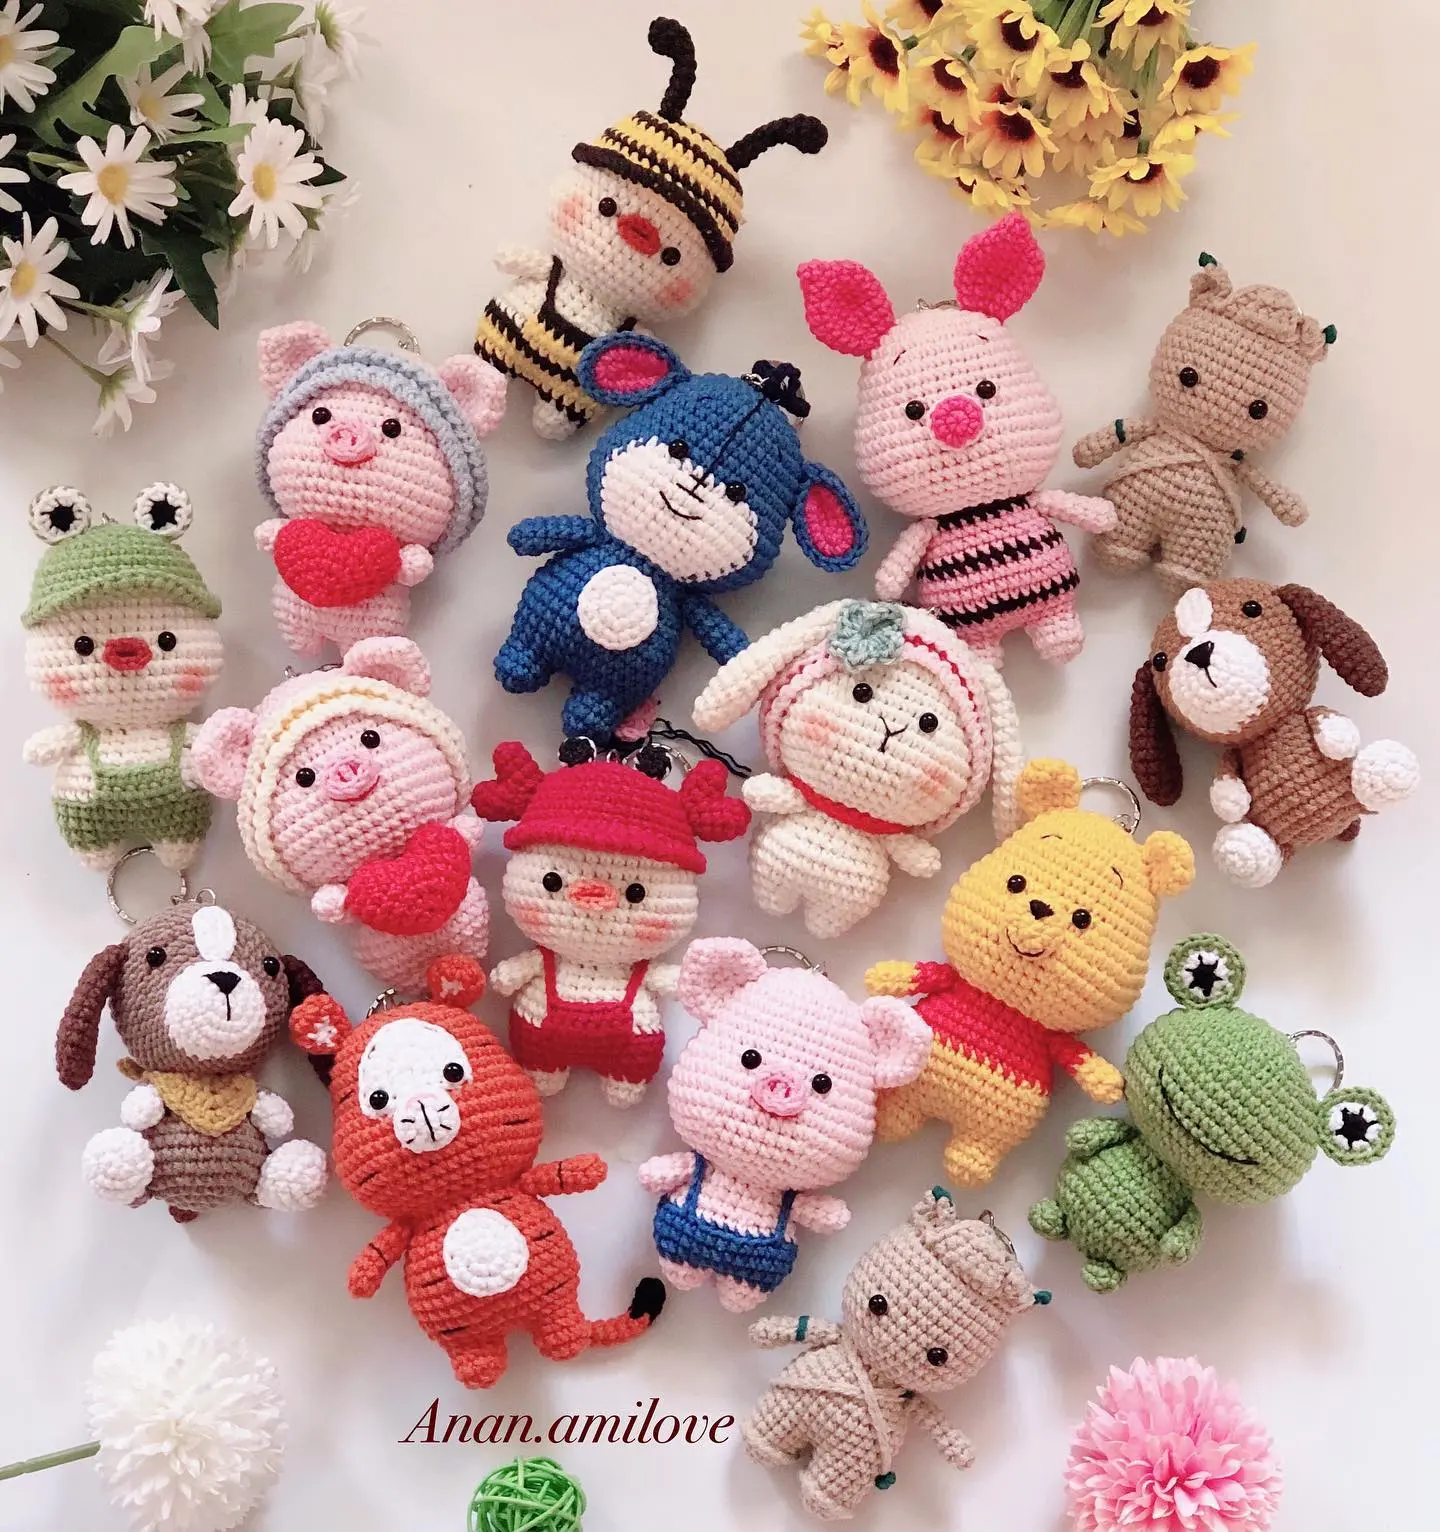 Amigurumi toys by Anan.amilove